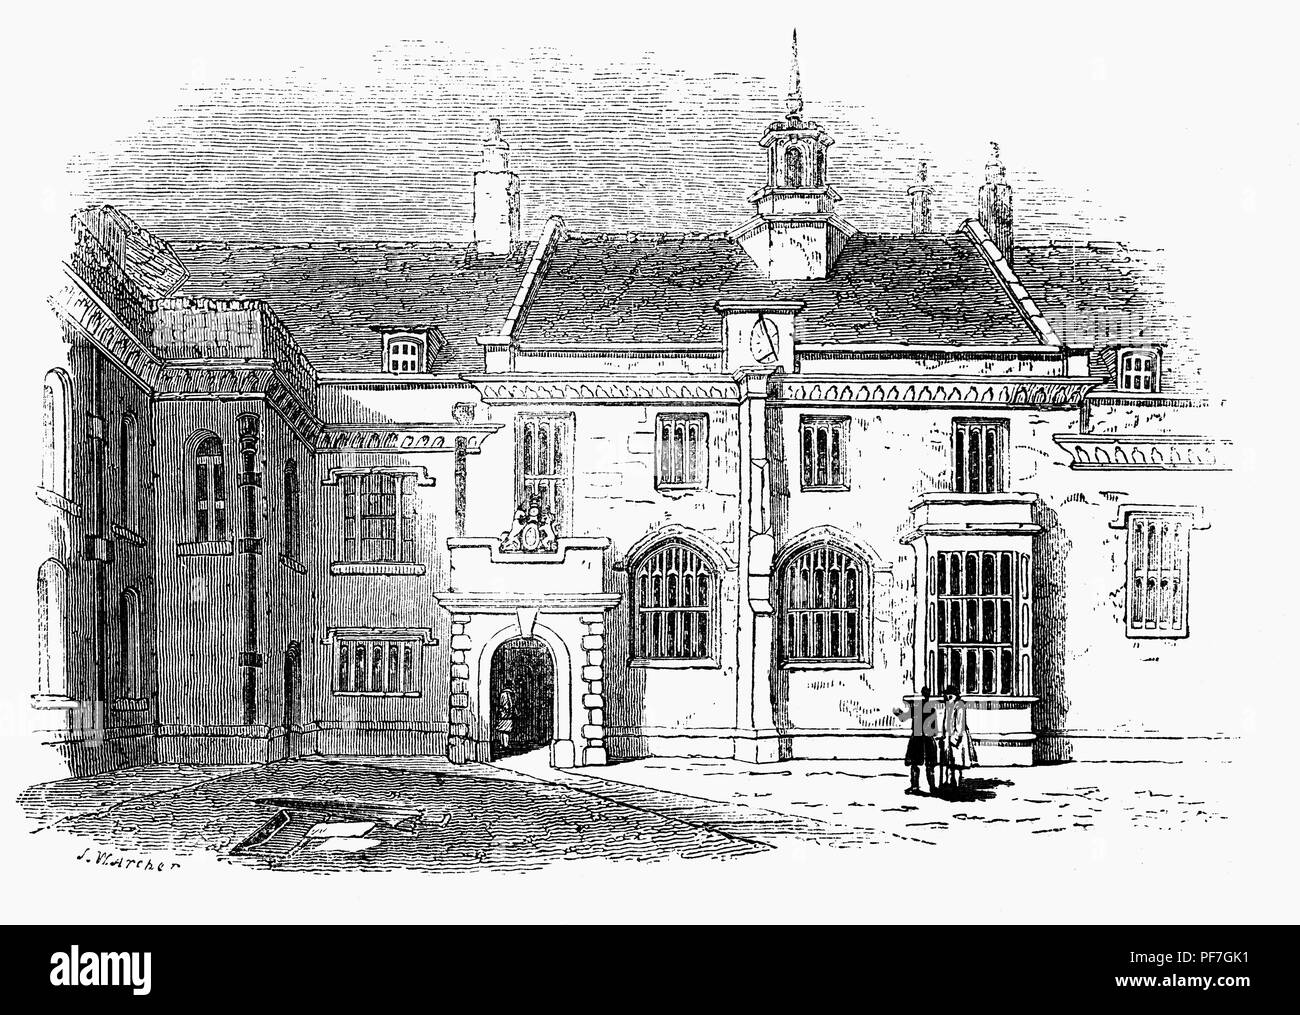 Certosa di Londra è un complesso di edifici di Smithfield, Londra risalente al XIV secolo. Ha cominciato come un priorato dei Certosini, fondato nel 1371 e sciolto nel 1537. Nel 1545, l'intero sito è stato acquistato da Sir Edward (poi Signore) a nord, che hanno trasformato il complesso in una lussuosa mansion house. Nel 1558, la Regina Elisabetta ho usato la casa durante i preparativi per la sua incoronazione.La struttura è stata acquistata da Thomas Howard, 4° duca di Norfolk. Foto Stock